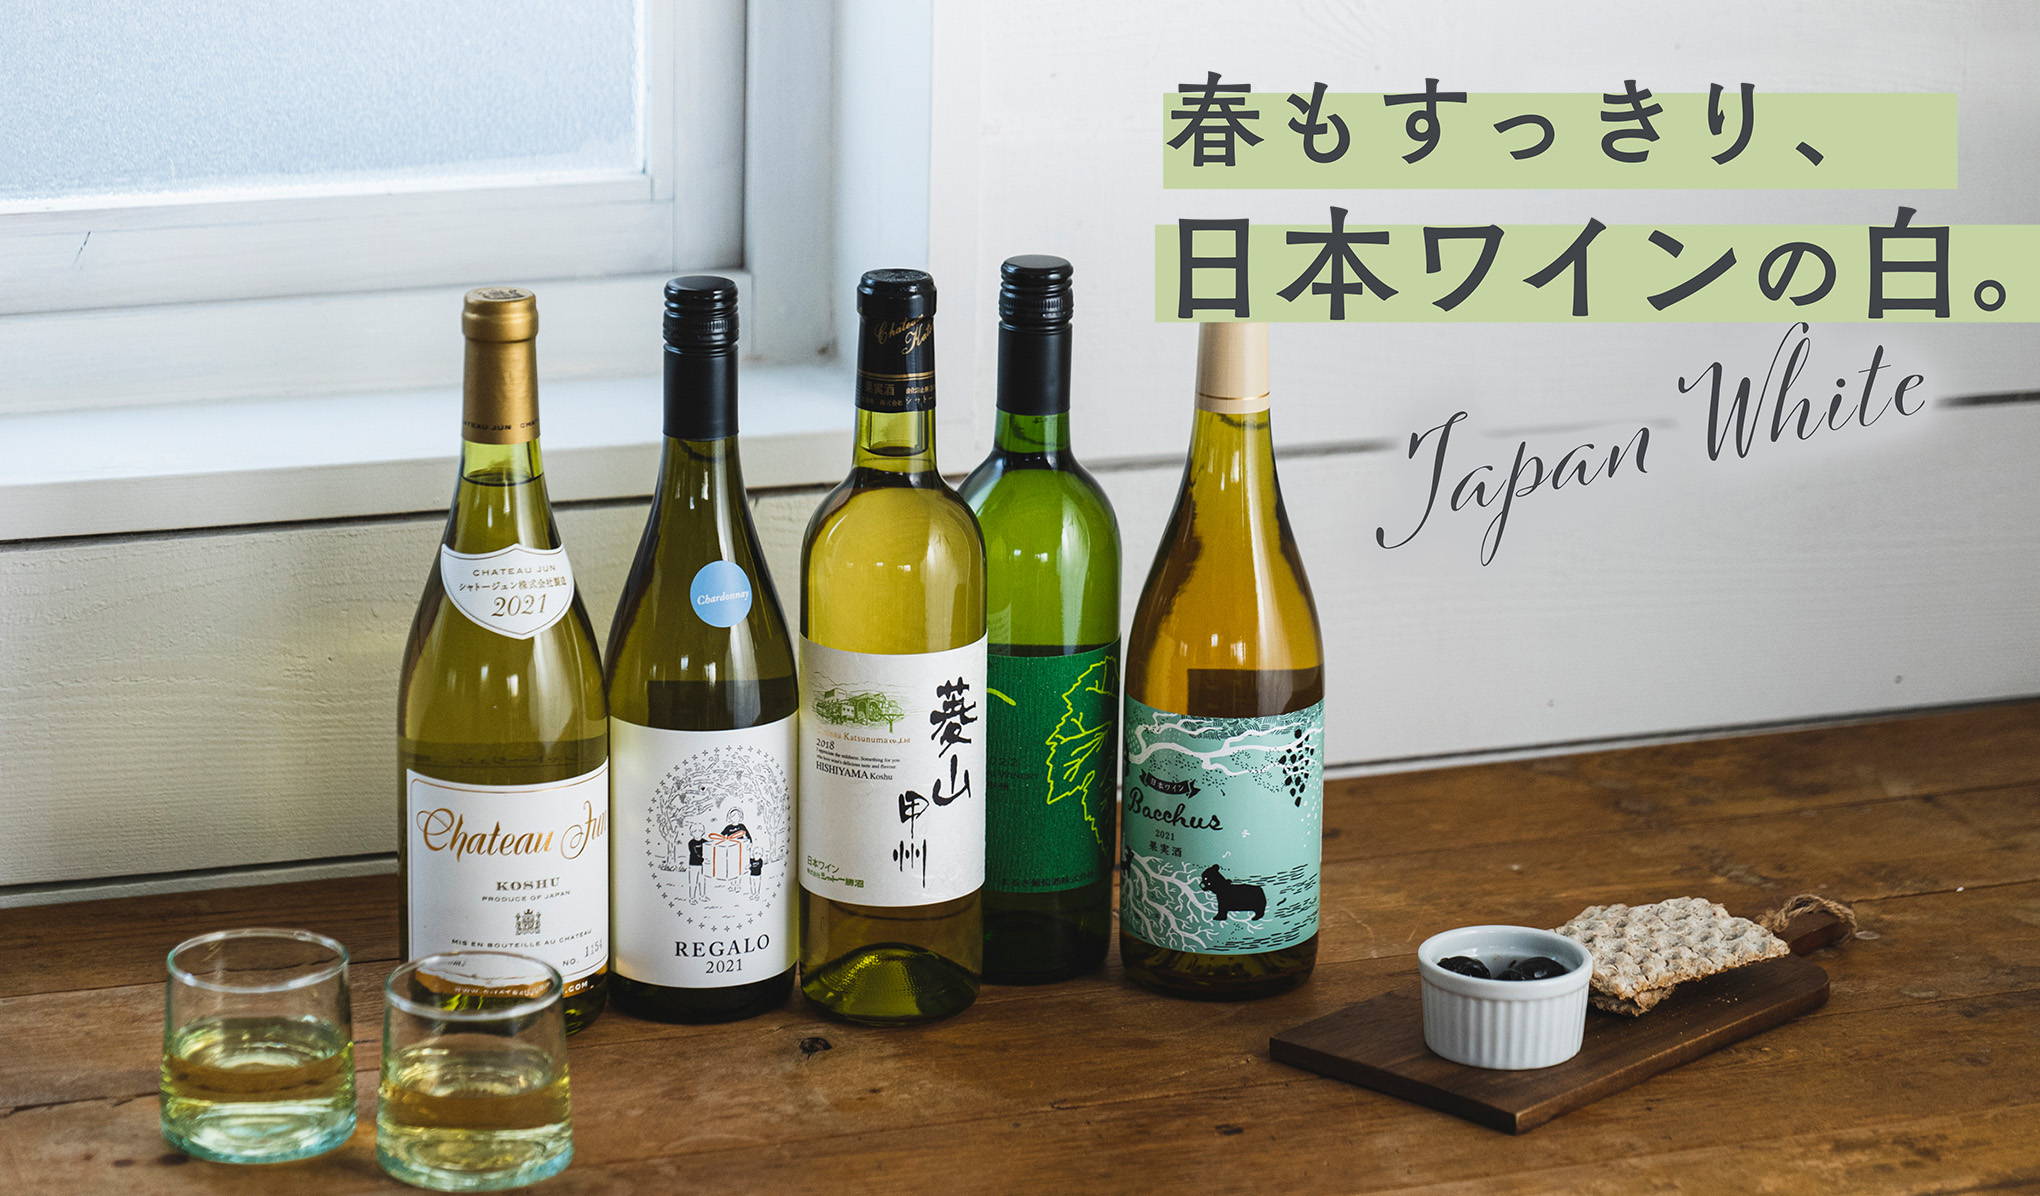 春もすっきり、日本ワインの白。